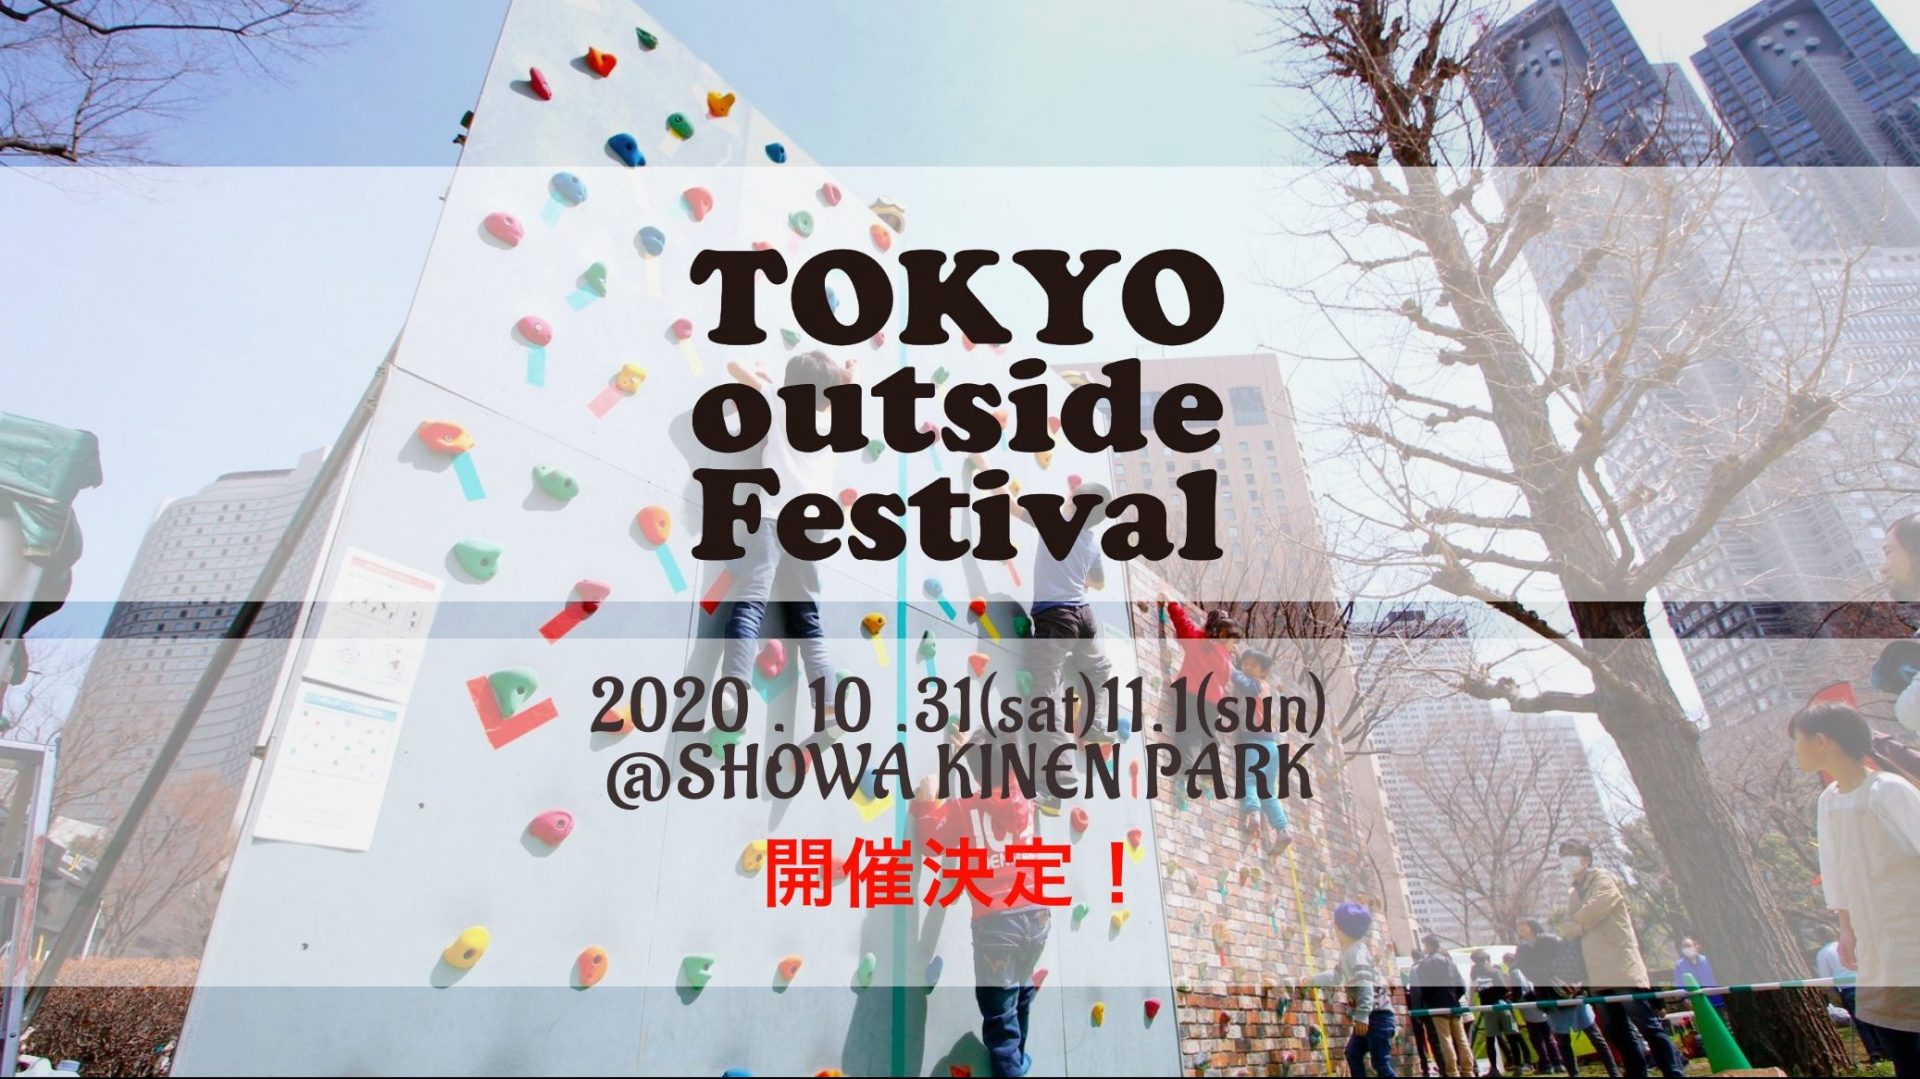 10月31日 11月1日開催 Tokyo Outiside Festival 昭和記念公園 キャンプレビュー